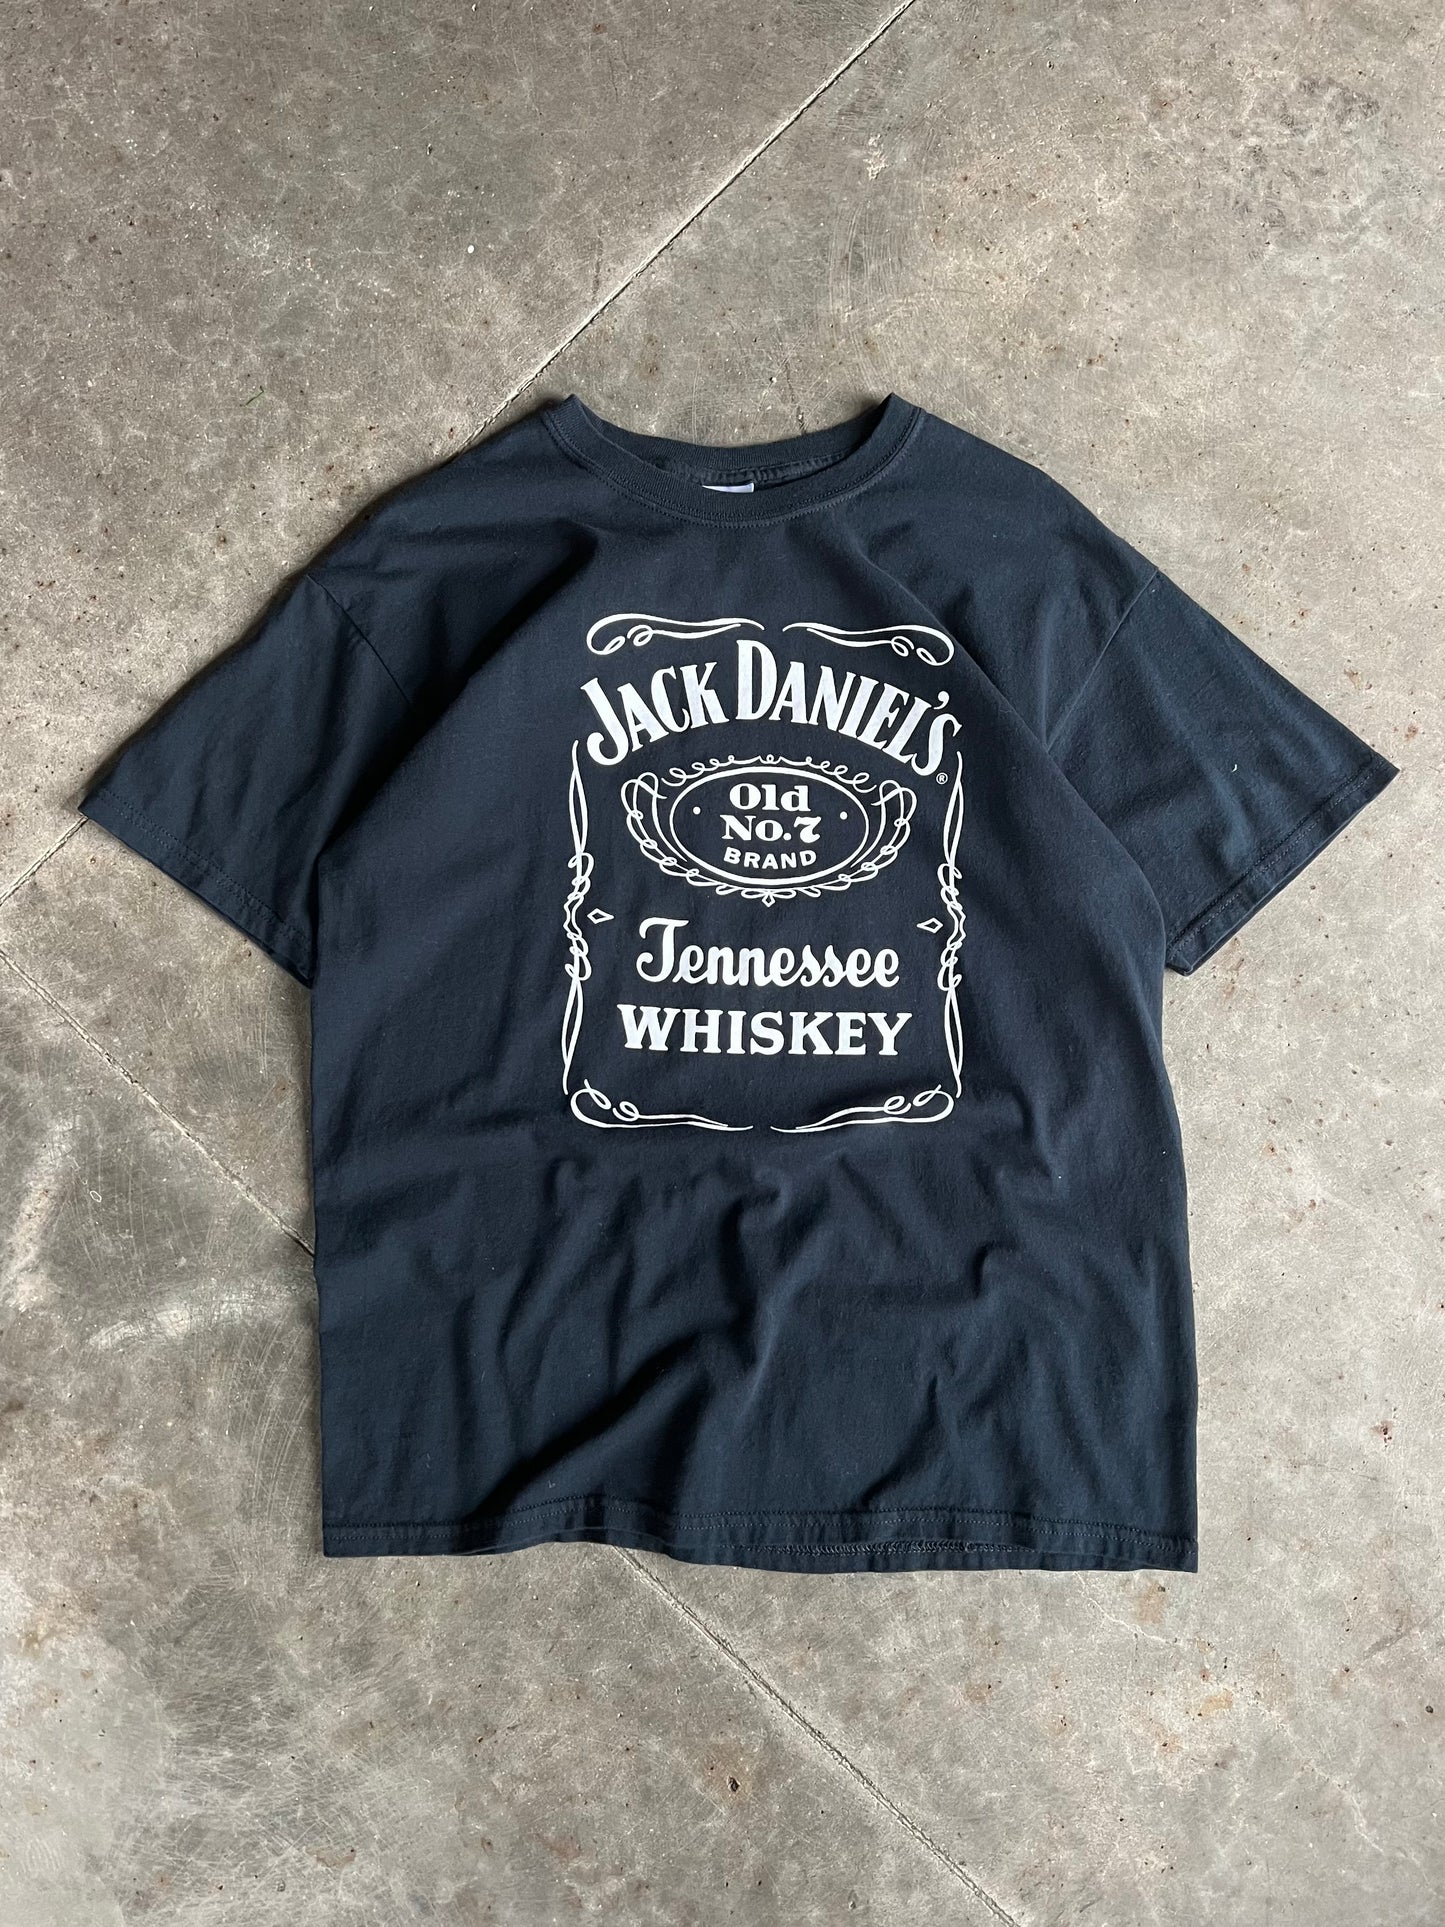 Vintage Jack Daniel’s Shirt - L